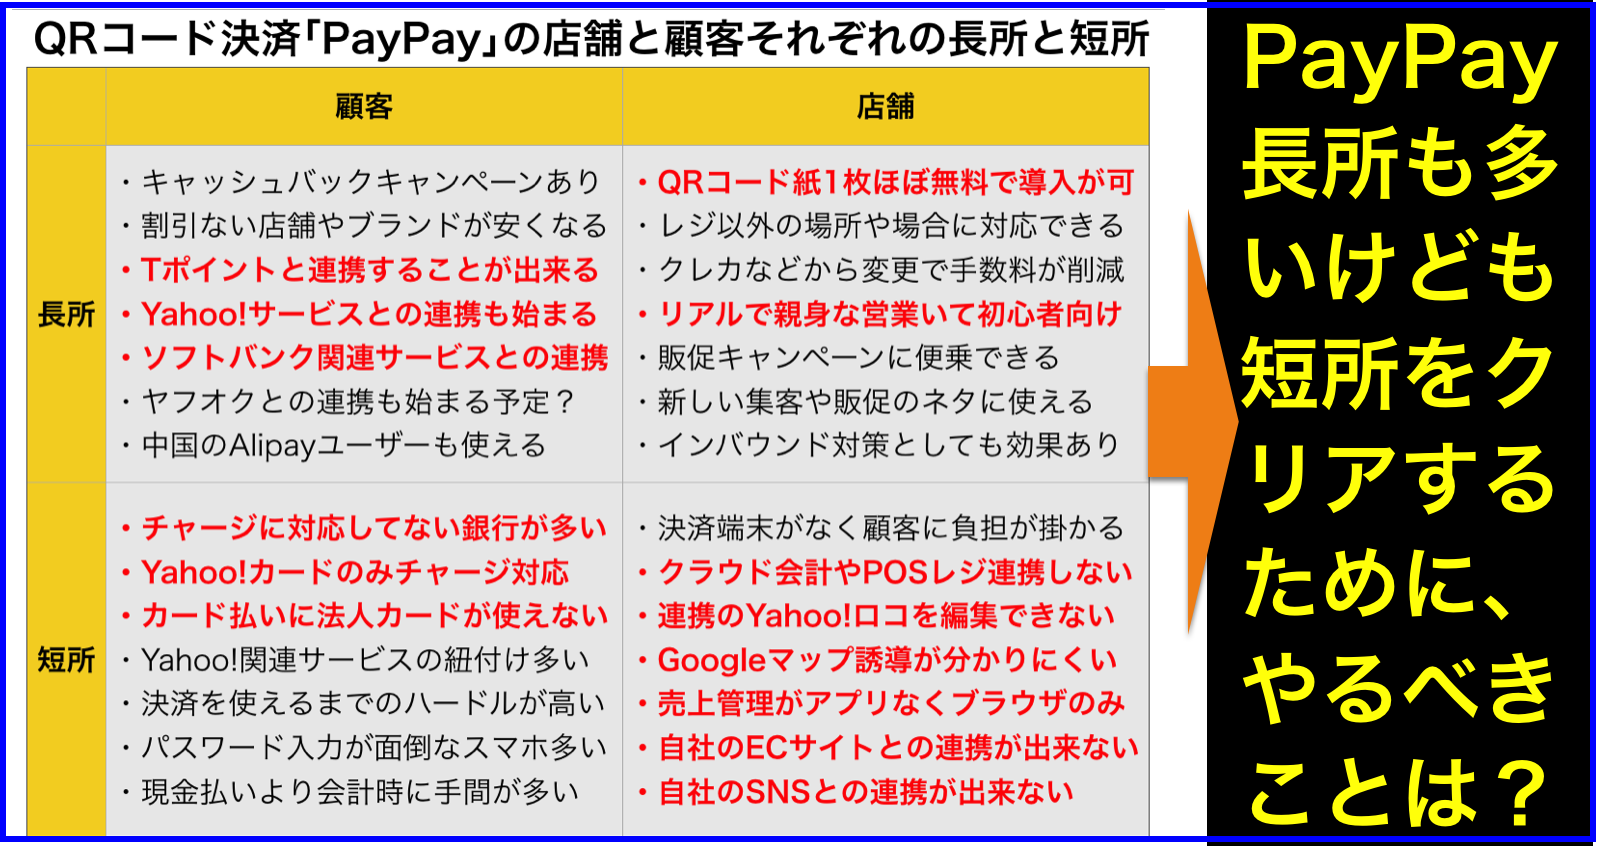 QRコード決済｢PayPay｣の店舗と顧客それぞれの長所と短所